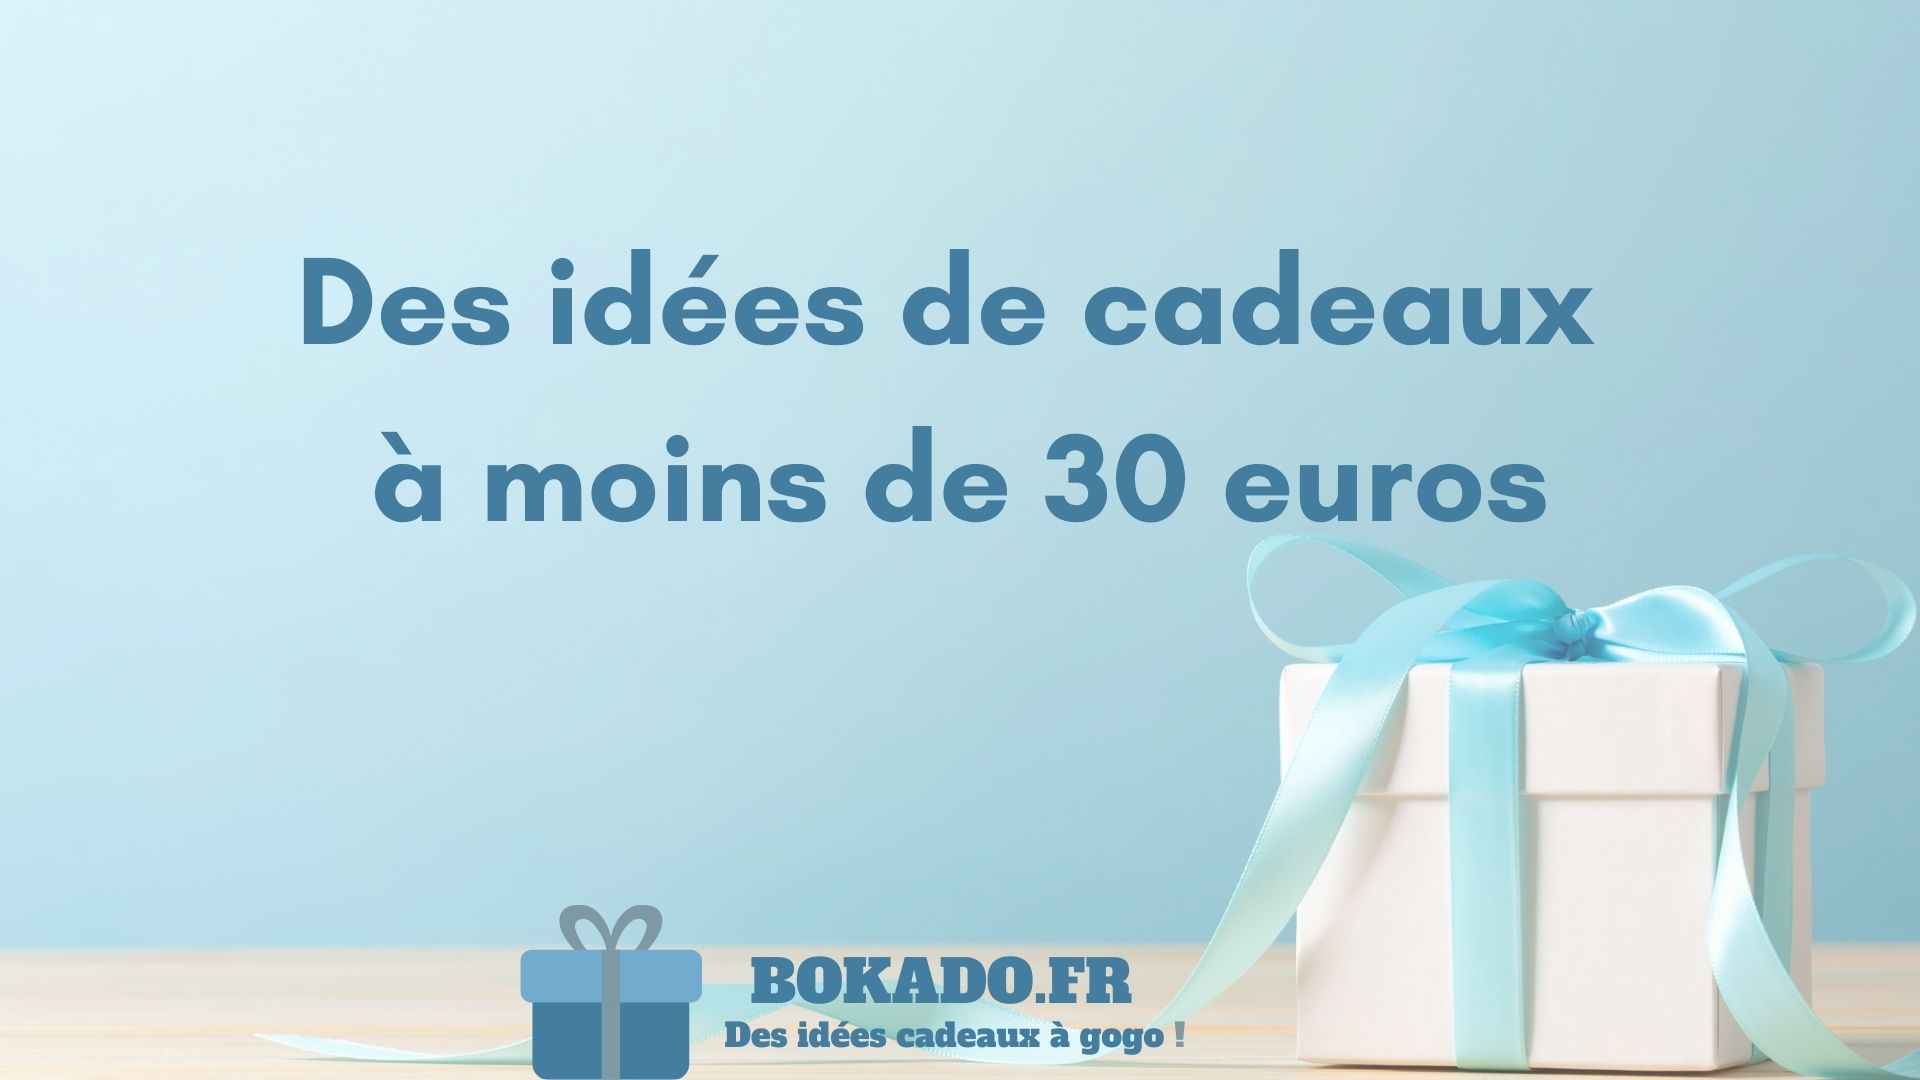 Idée cadeau moins de 30 euros 🎄 @BourjoisParis l'a fait ! On vous pro